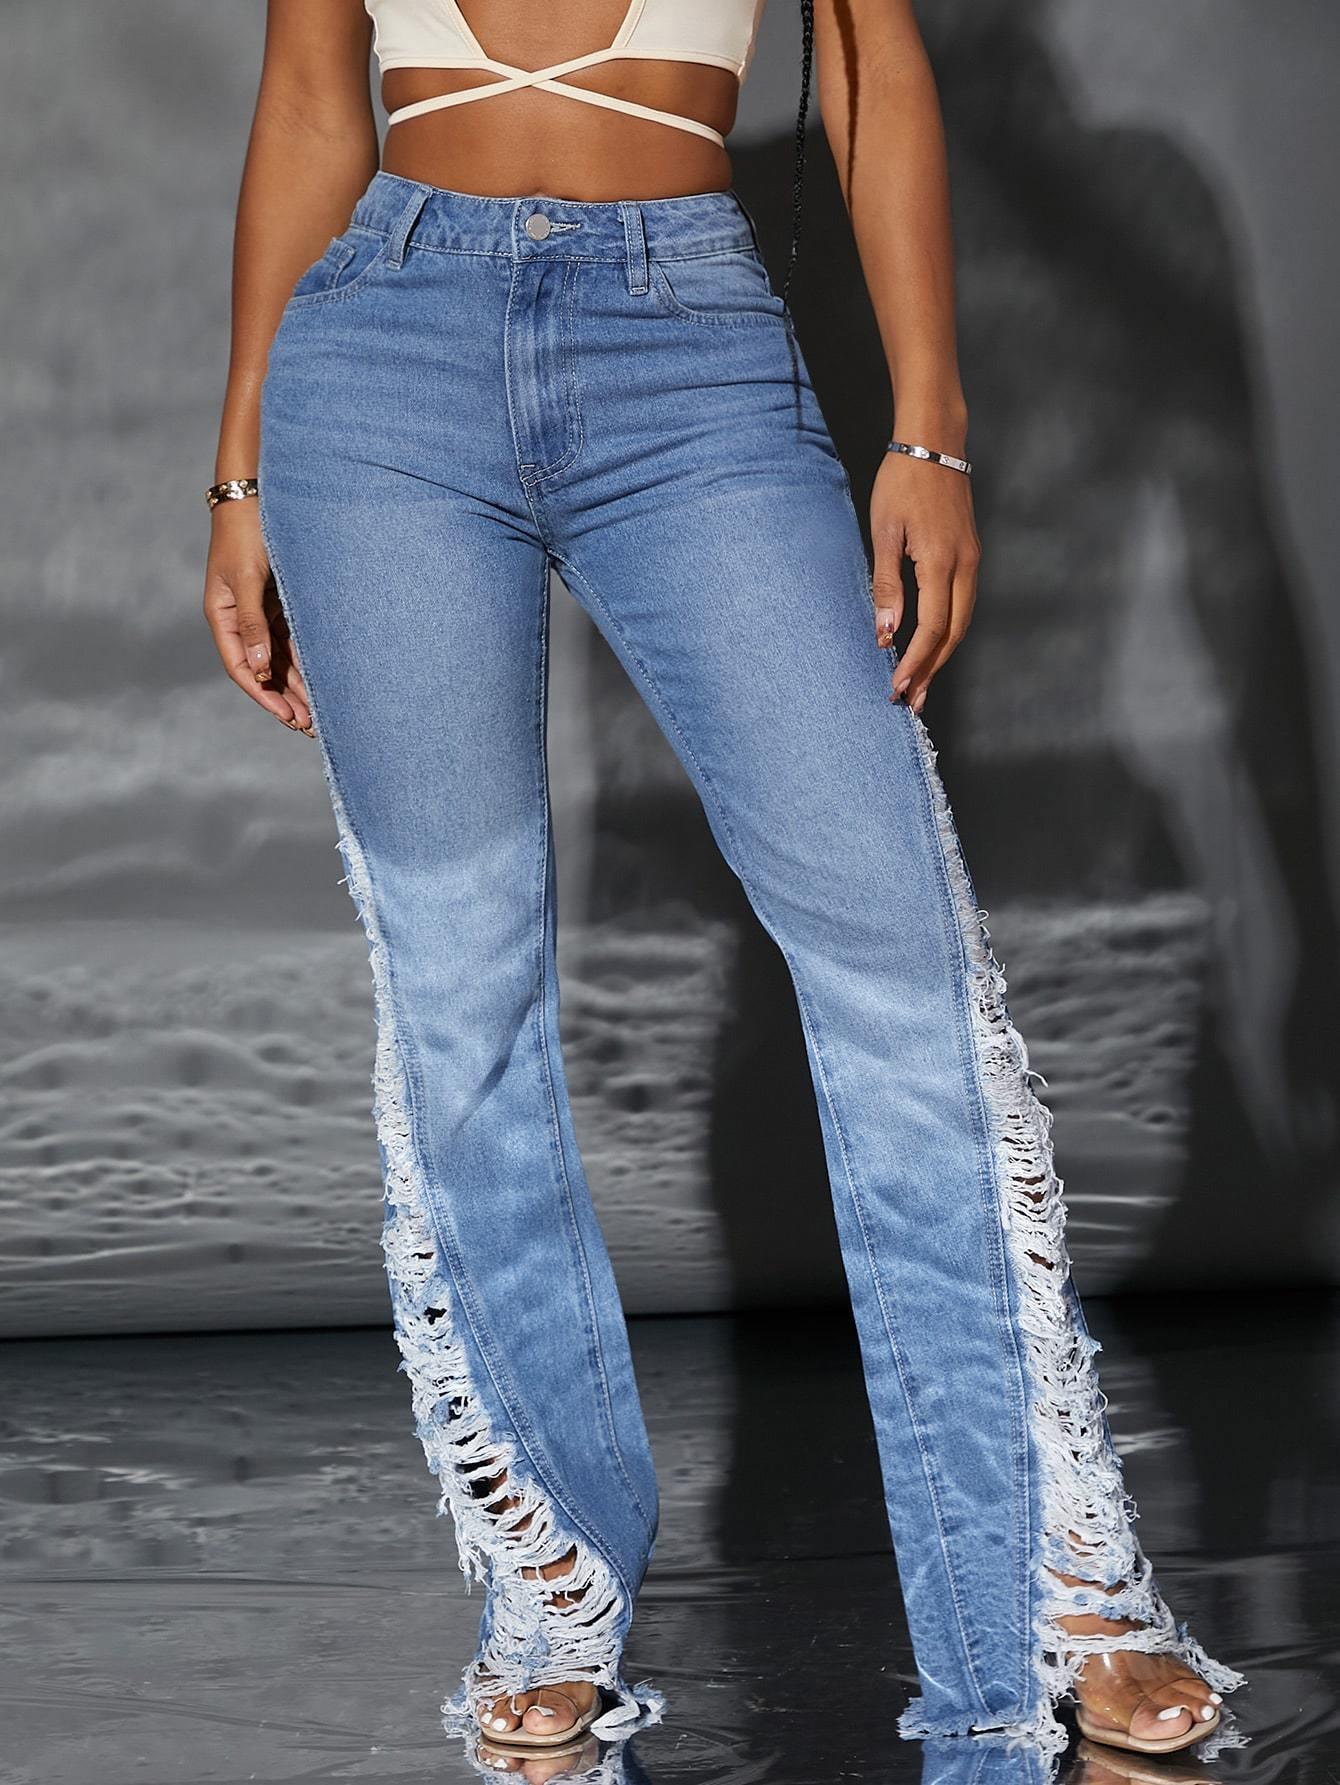 SAVLUXE Pants Xiomara Fashion Ripped Jeans Pants